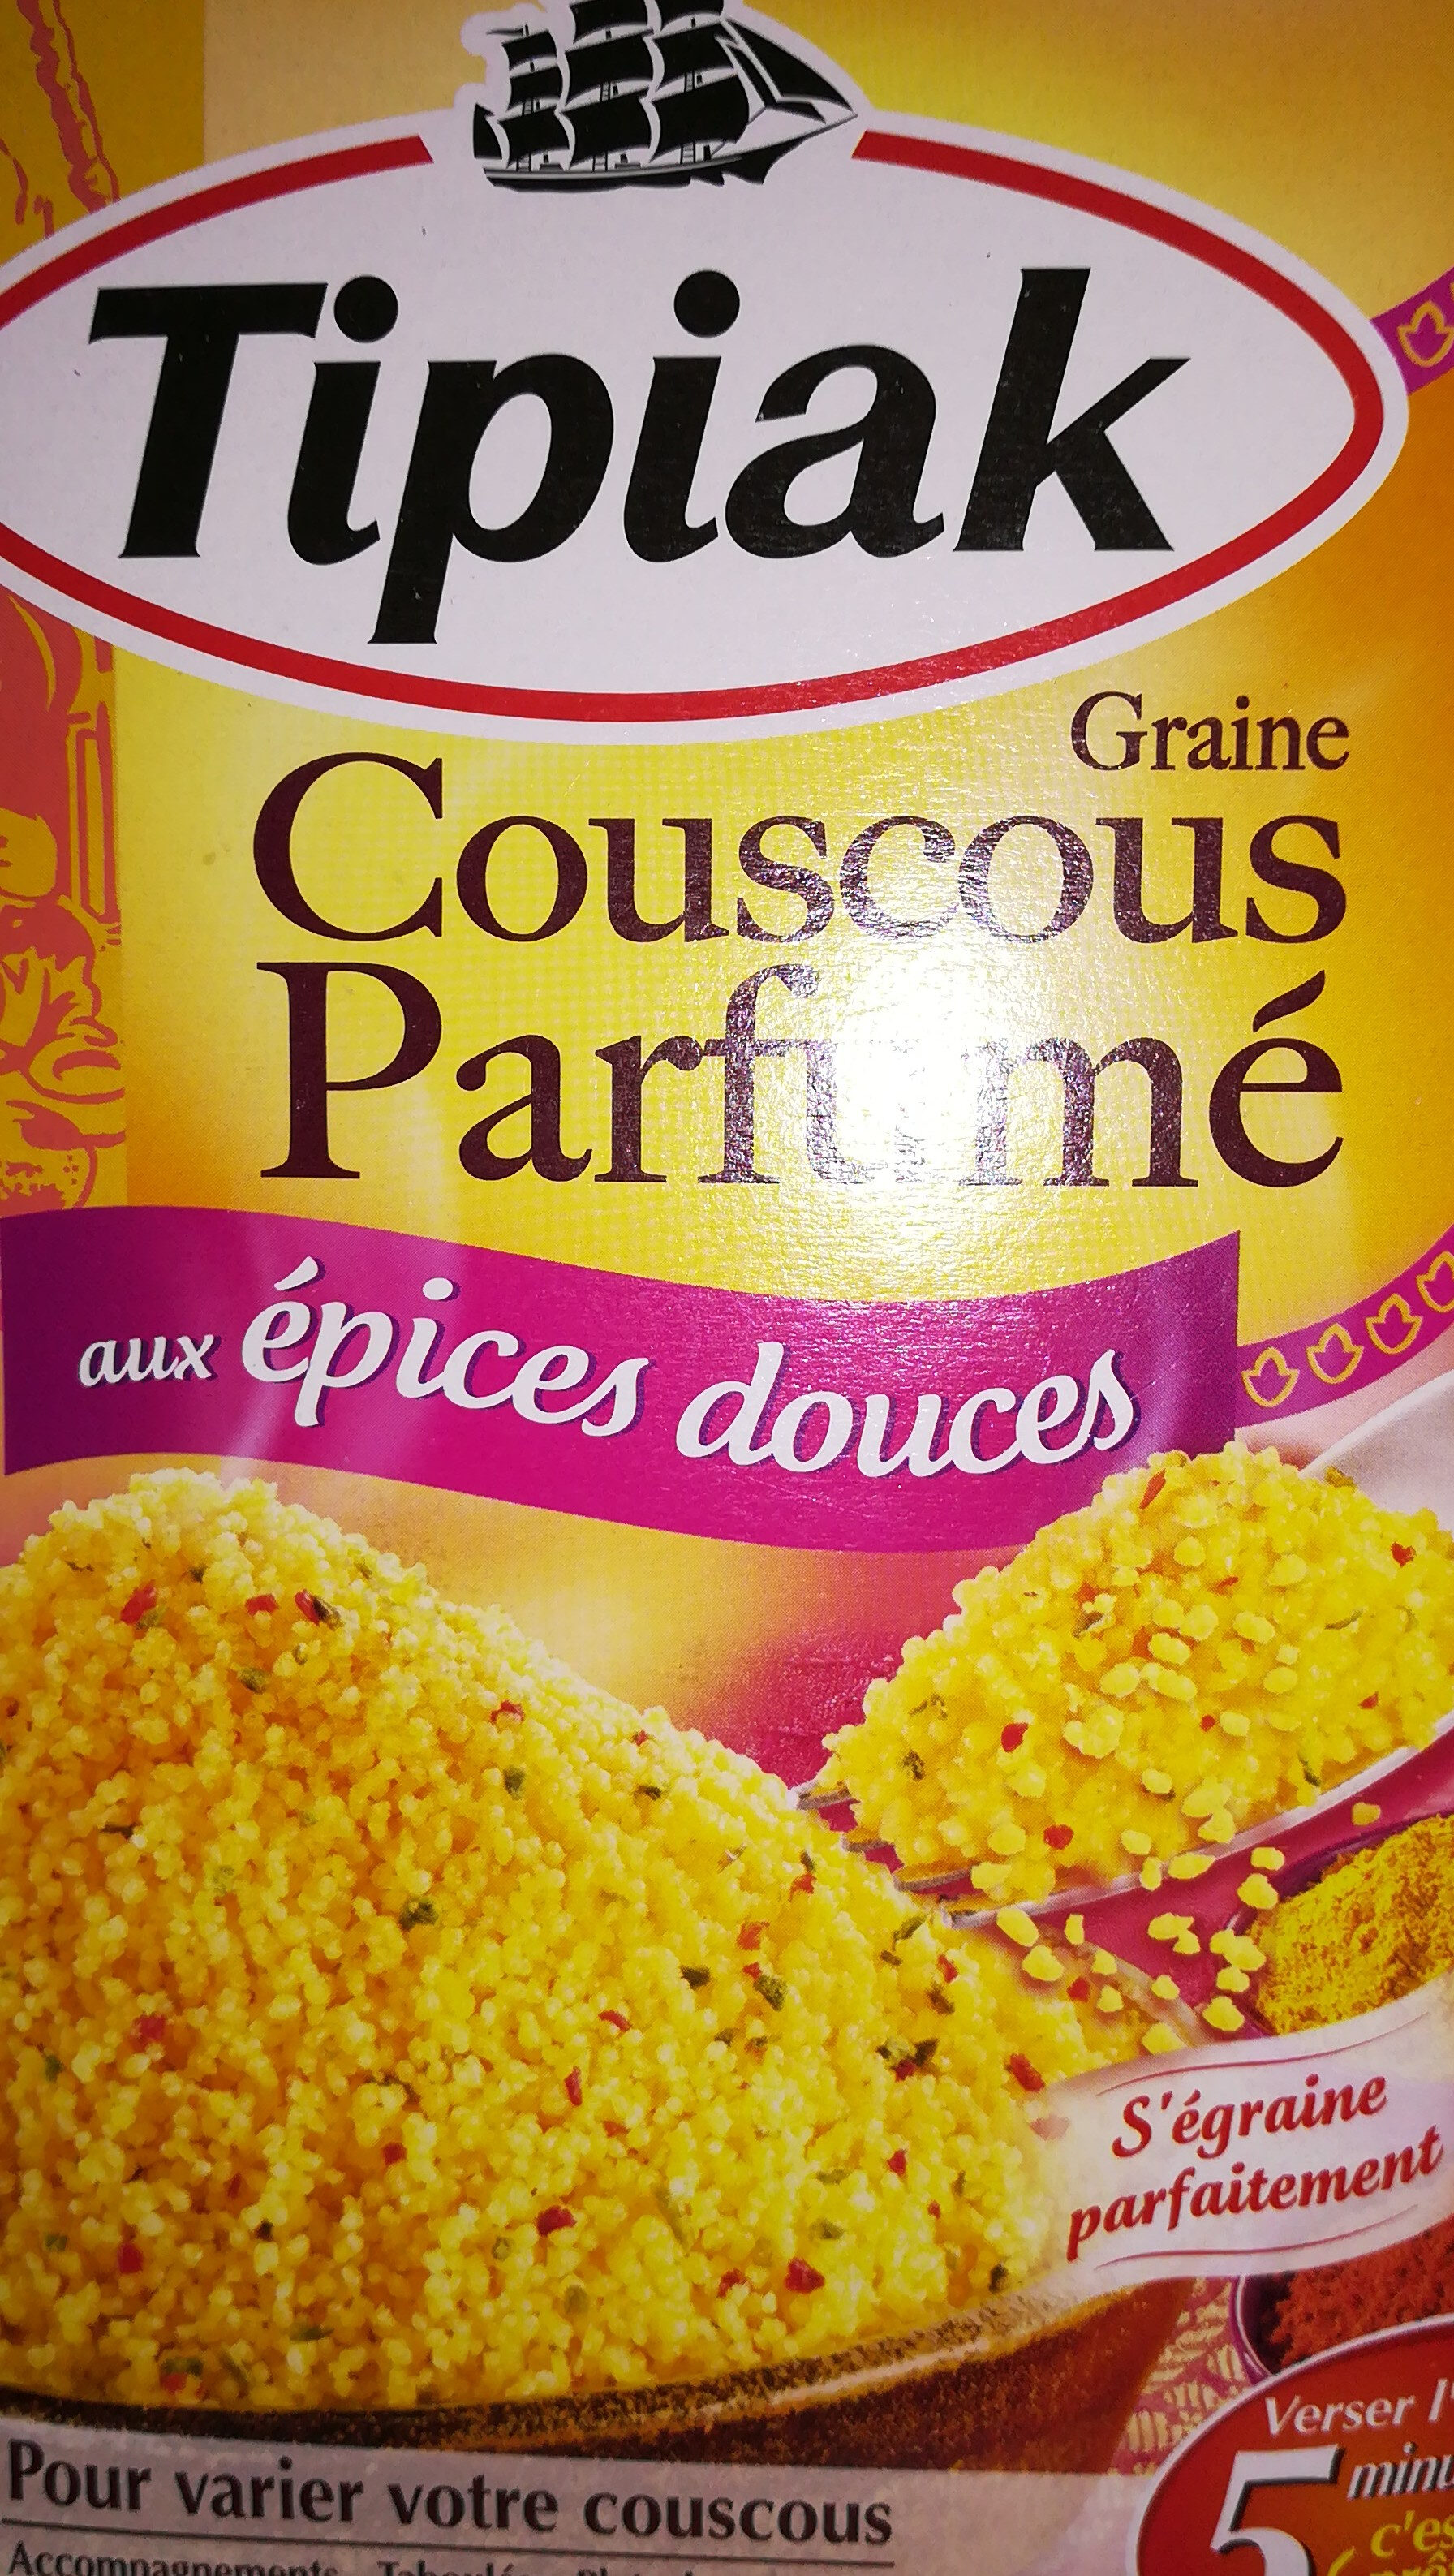 Couscous parfumé ép. douces - Produkt - fr